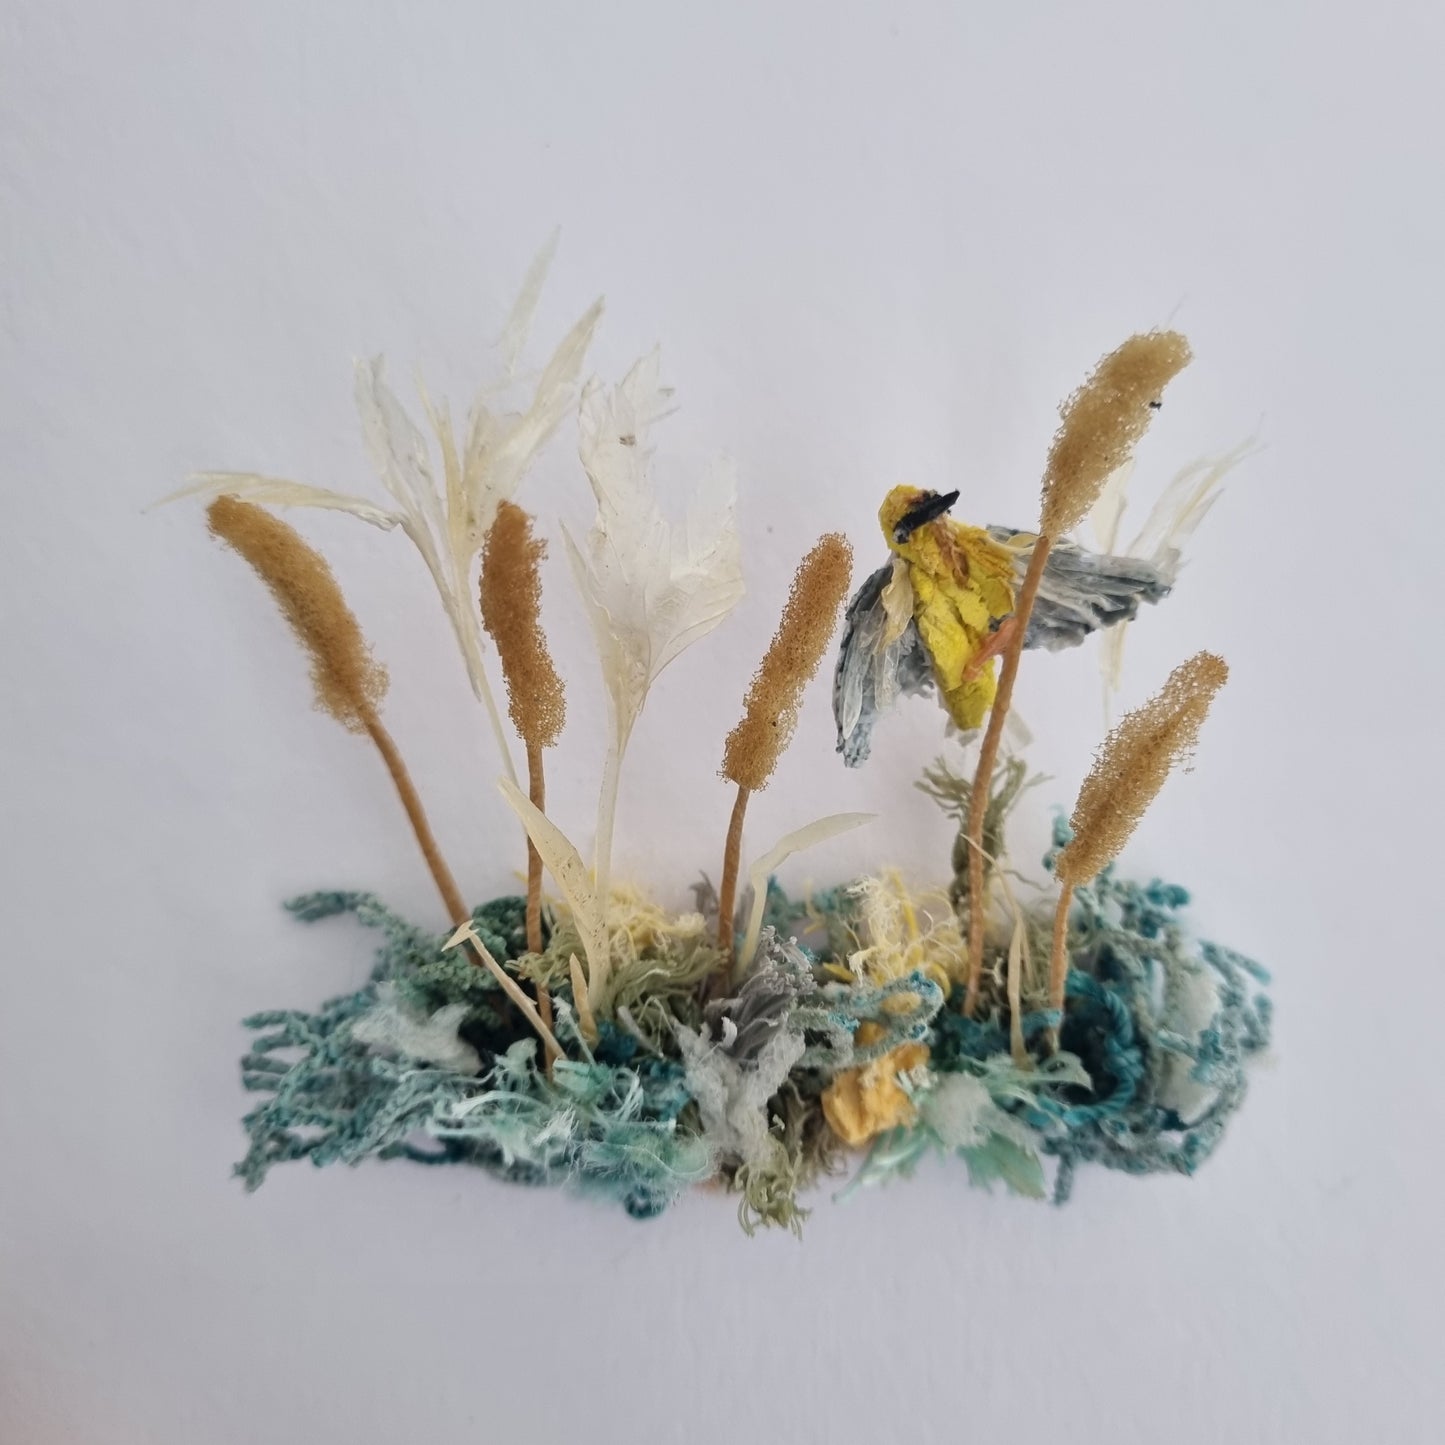 Weaver fluttering between the reeds